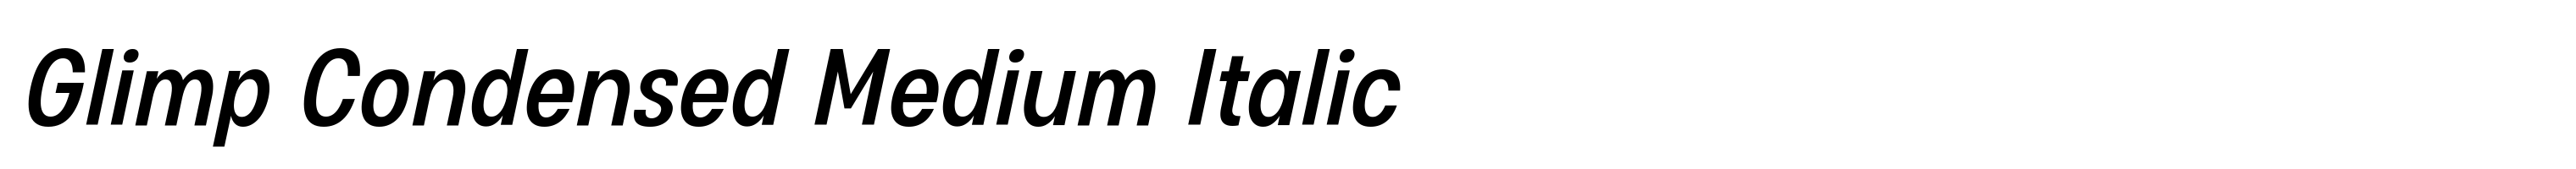 Glimp Condensed Medium Italic